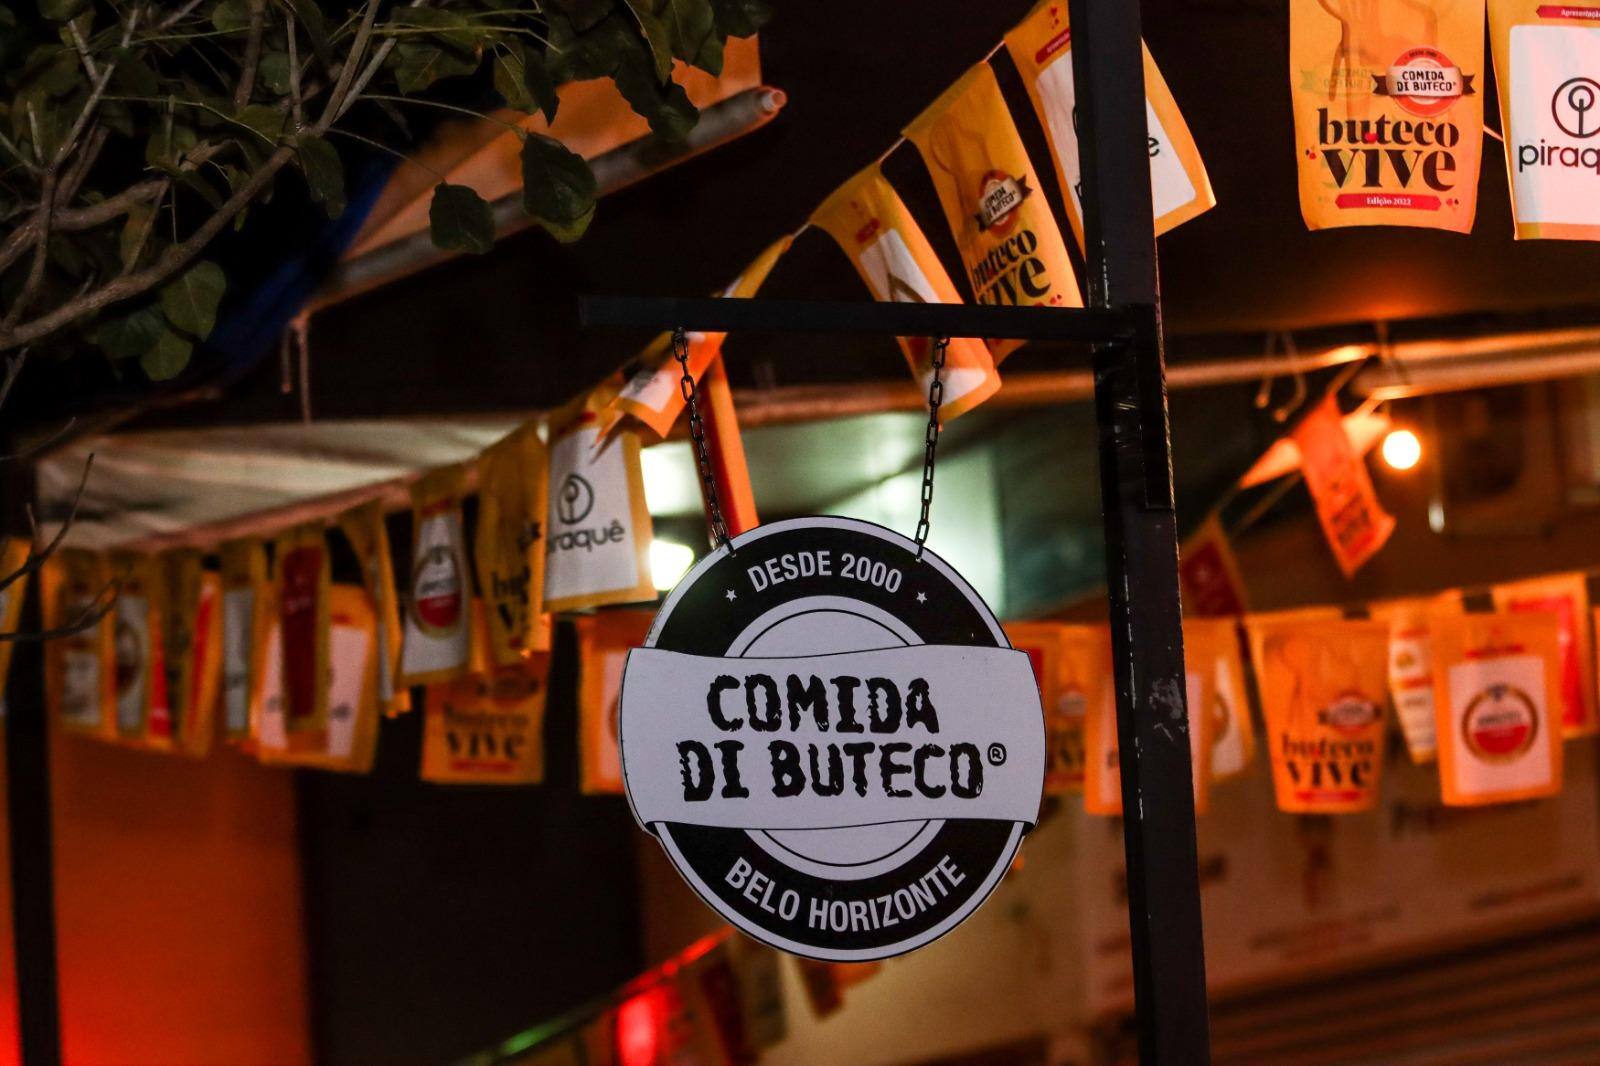 Comida di Buteco transformou vida de donos de bares, afirmam organizadores